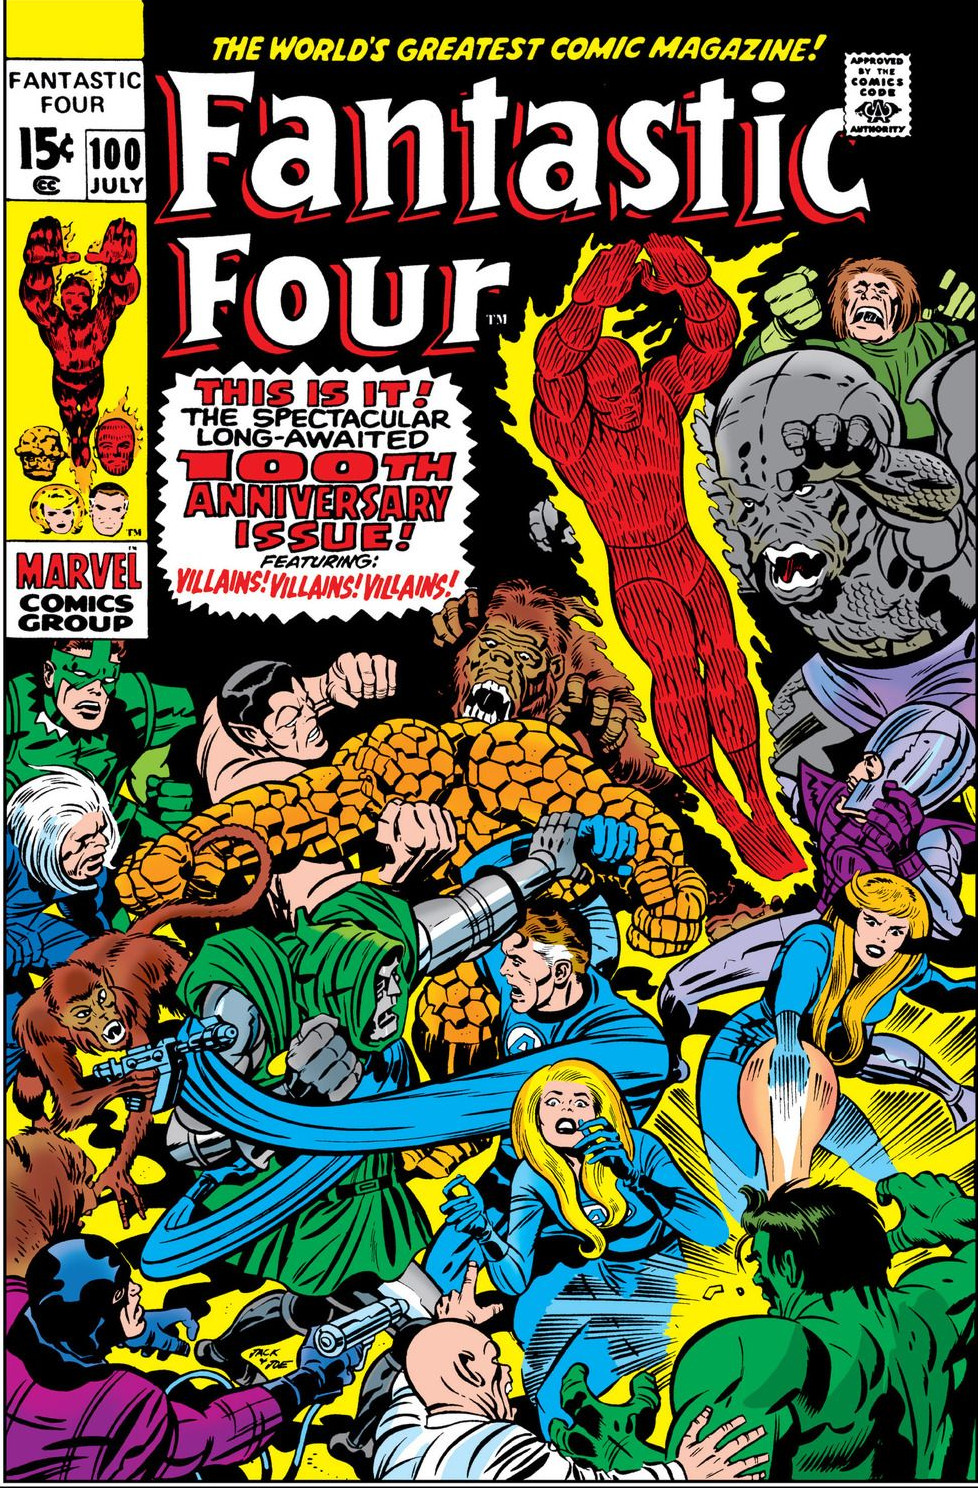 Fantastic Four Omnibus Vol 1 4 | Marvel Database | Fandom